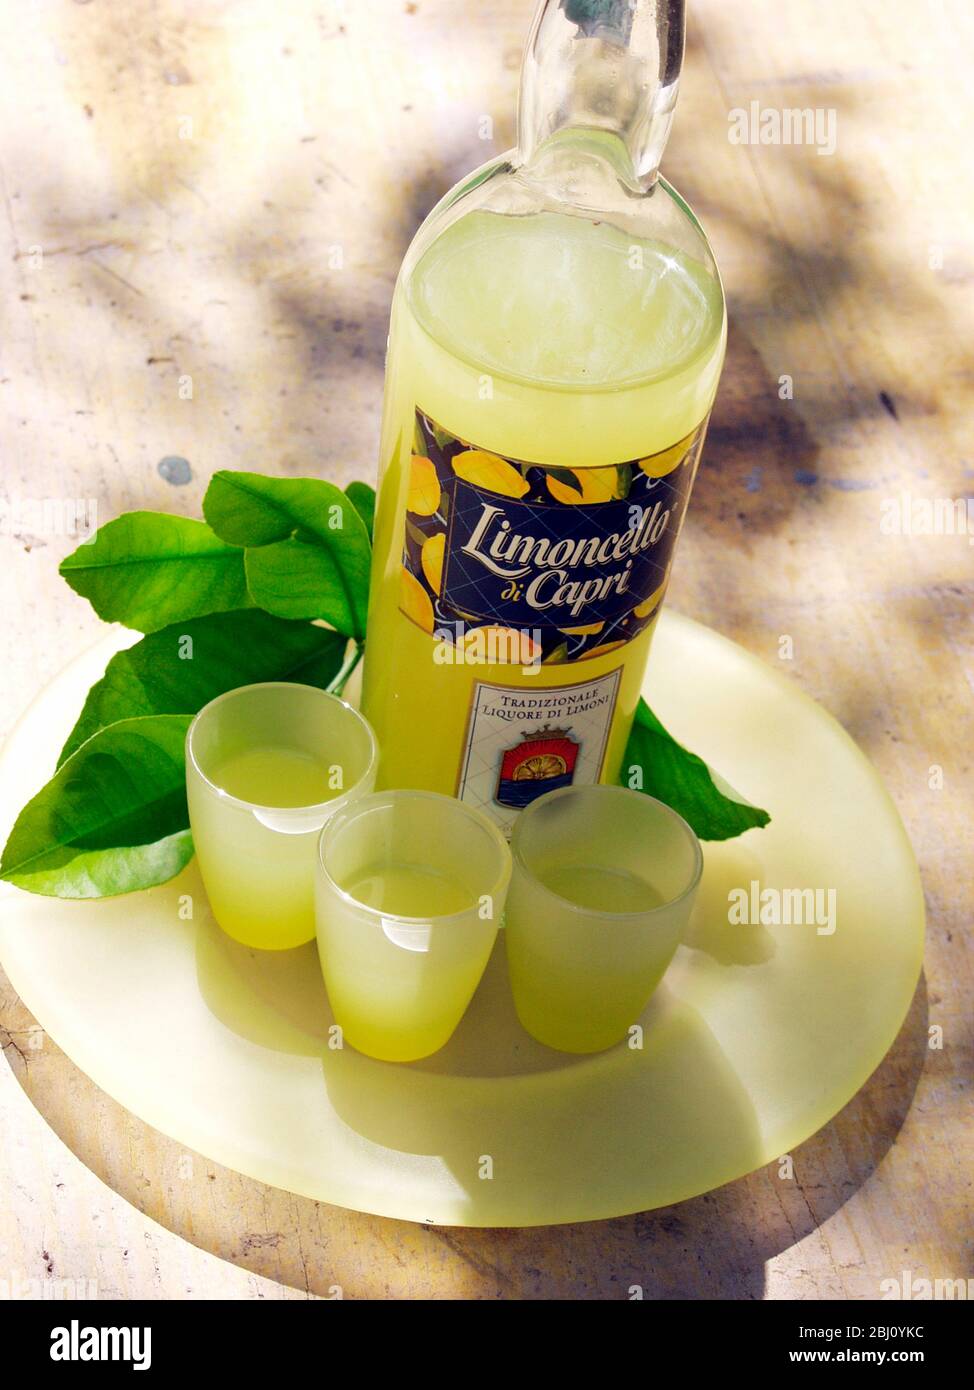 Botella de licor de limoncello con tres vasos y hojas de limonero - Foto de stock